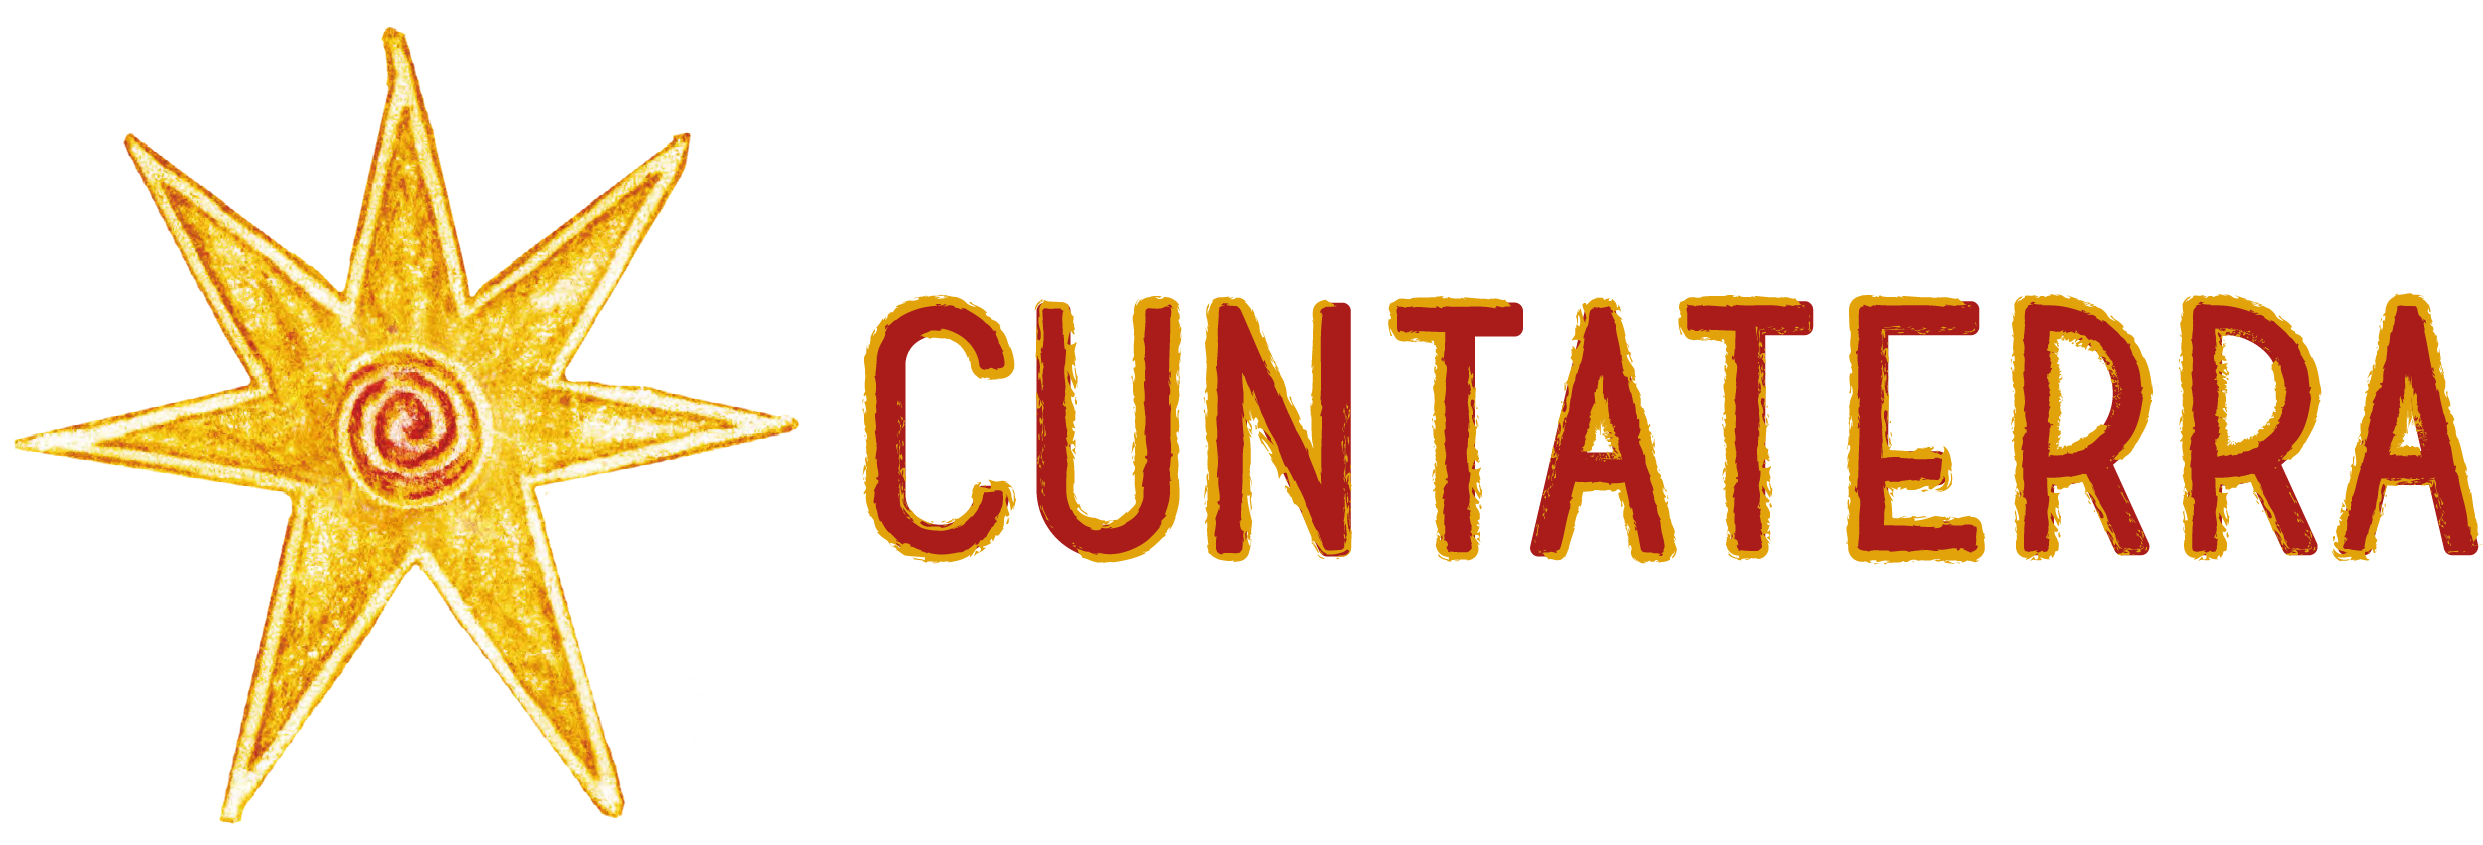 CuntaTerra